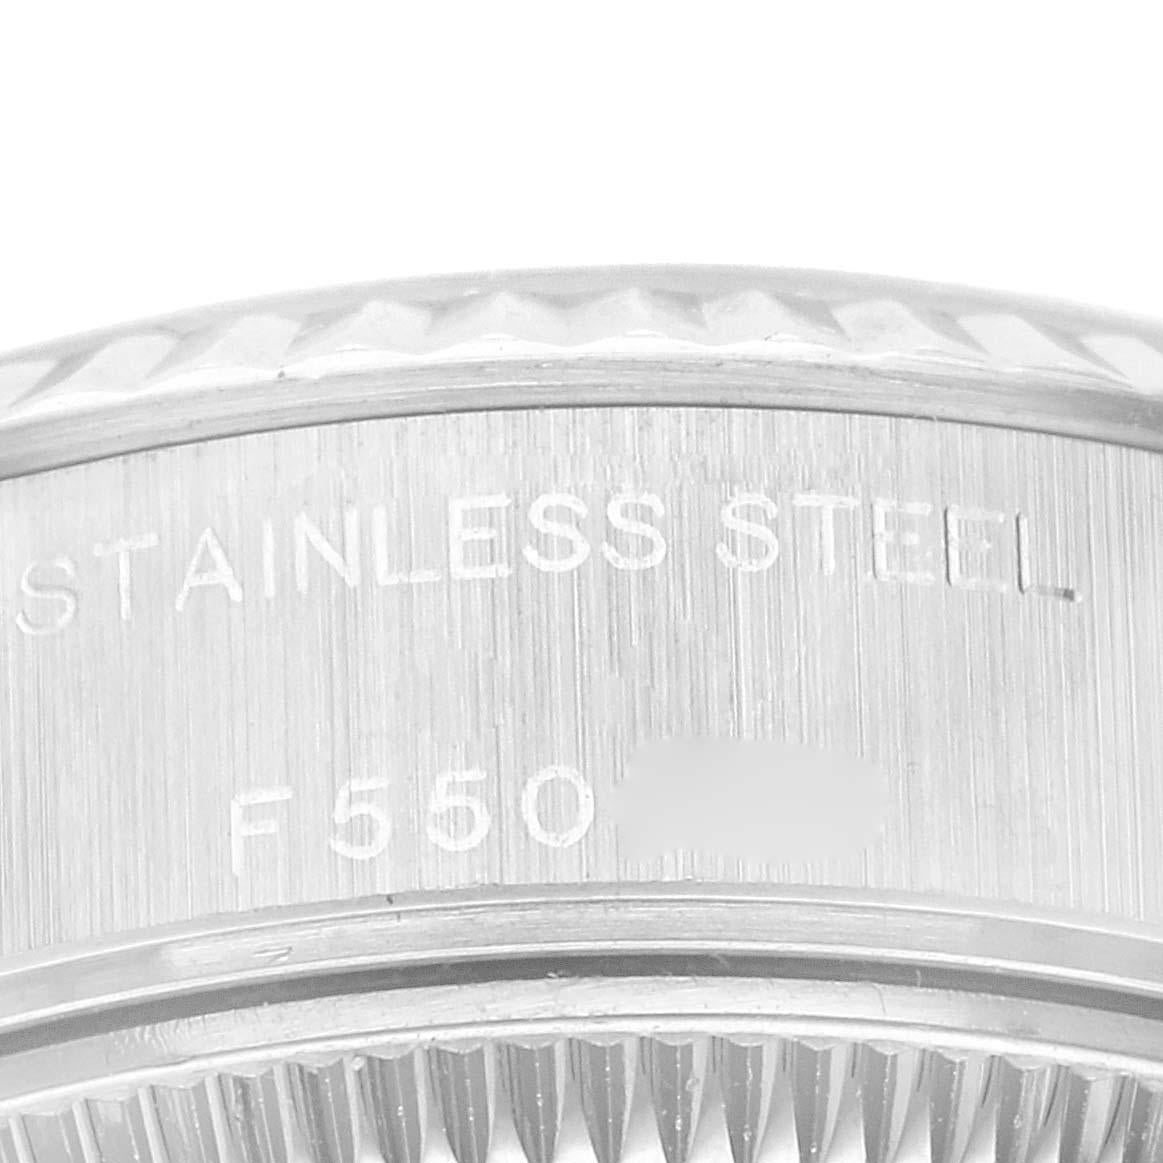 Rolex Datejust Salmon Diamond Dial White Gold Steel Ladies Watch 79174. Mouvement automatique à remontage automatique, officiellement certifié chronomètre. Boîtier oyster en acier inoxydable de 26.0 mm de diamètre. Logo Rolex sur la couronne.